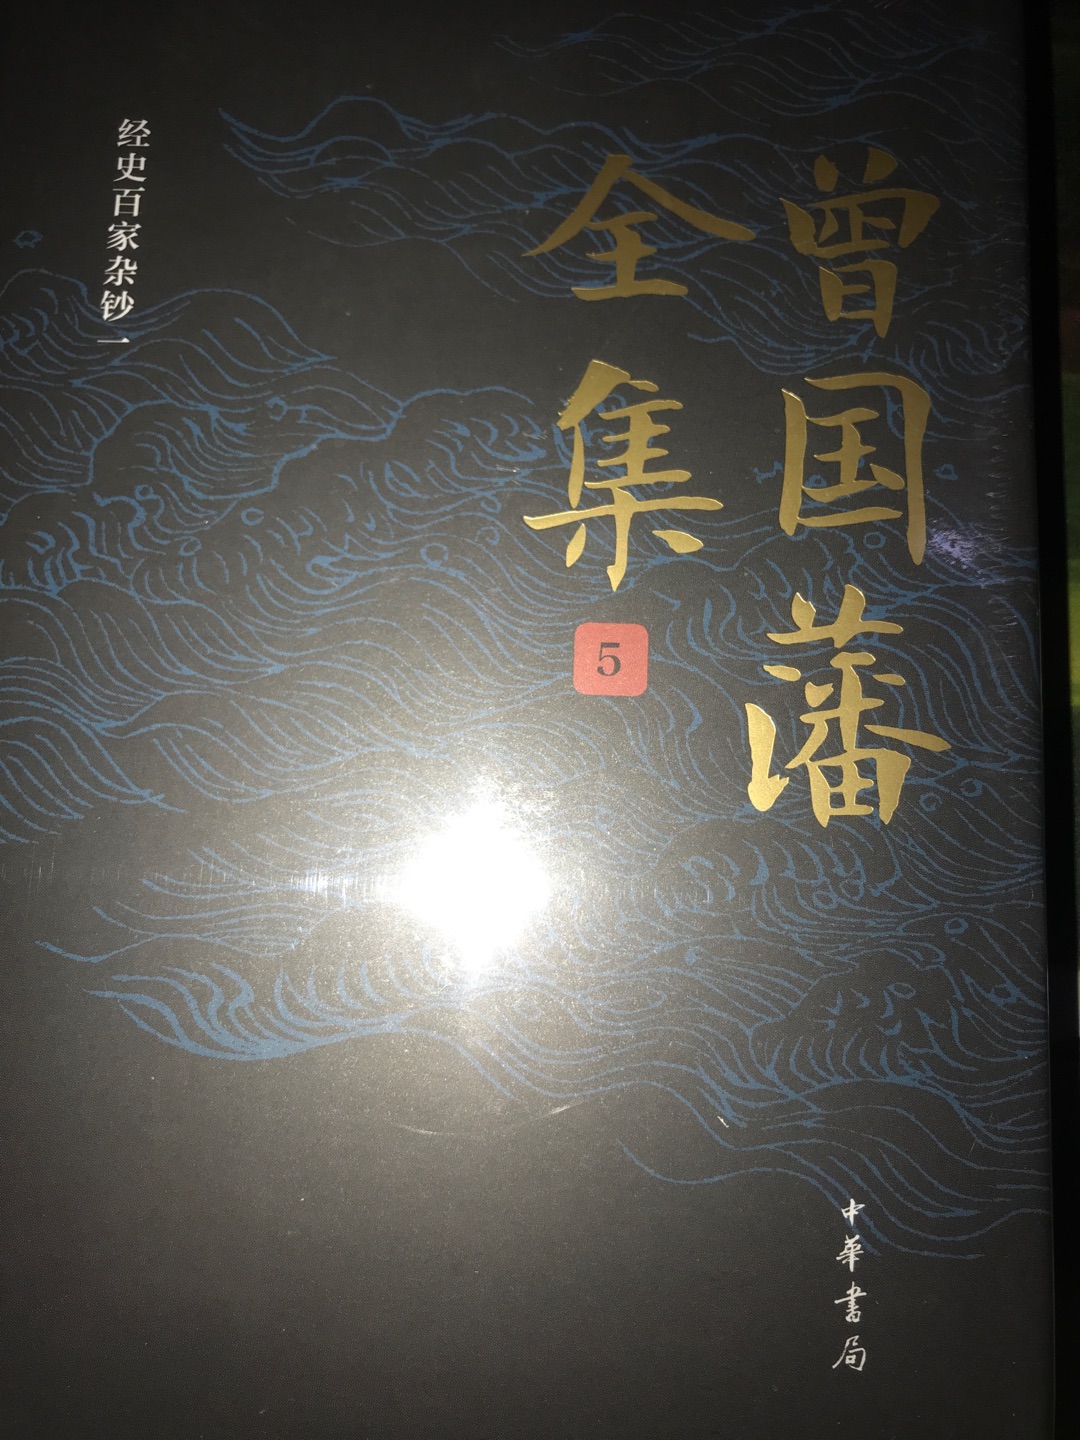 中华书局最新出版的曾国藩全集，极具性价比，值得细细阅读与收藏。